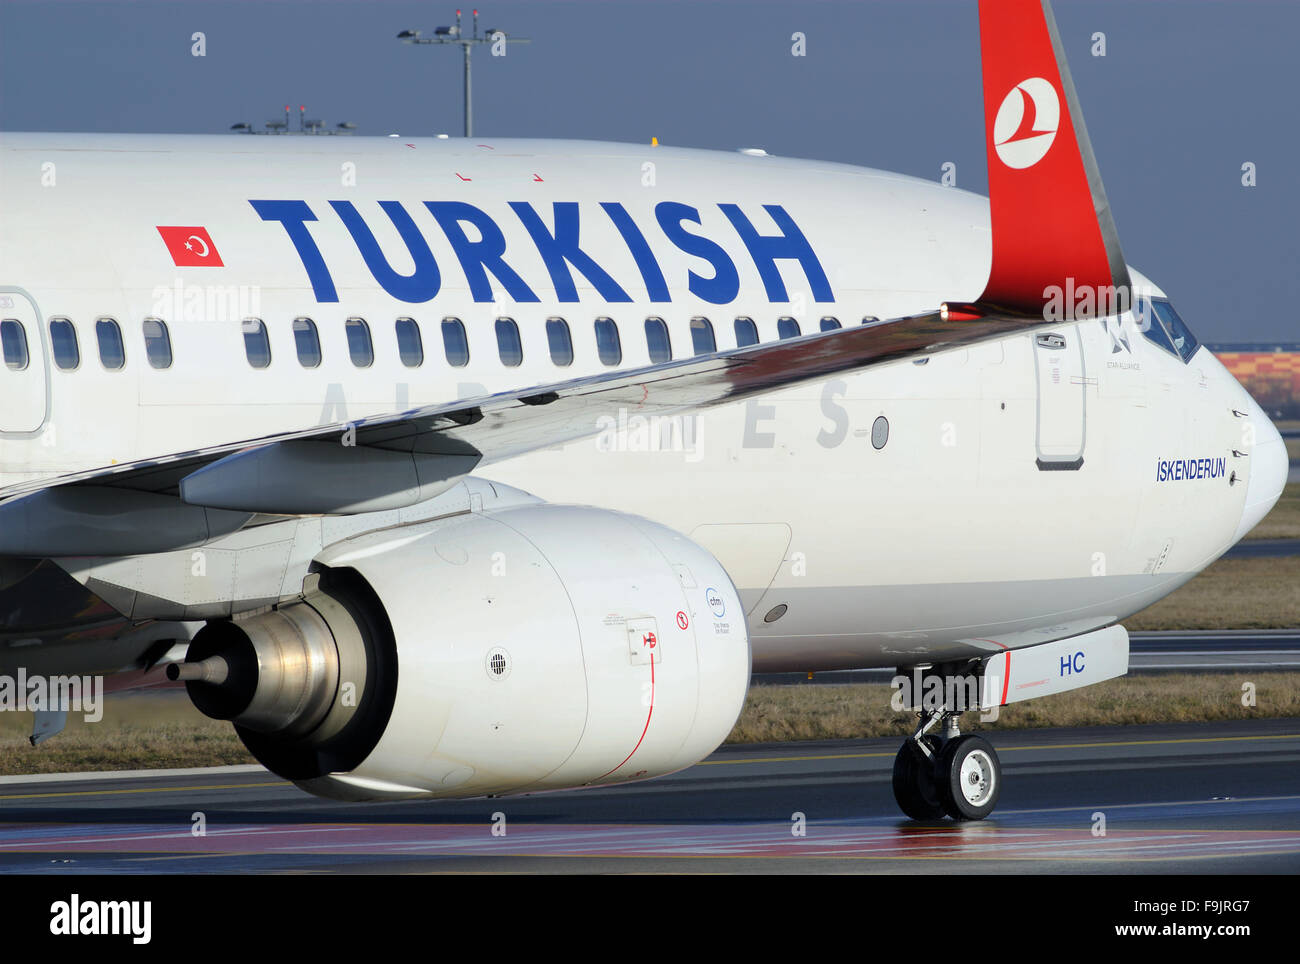 Turkish Airlines Boeing 737 800 Stockfoto Bild 91997367